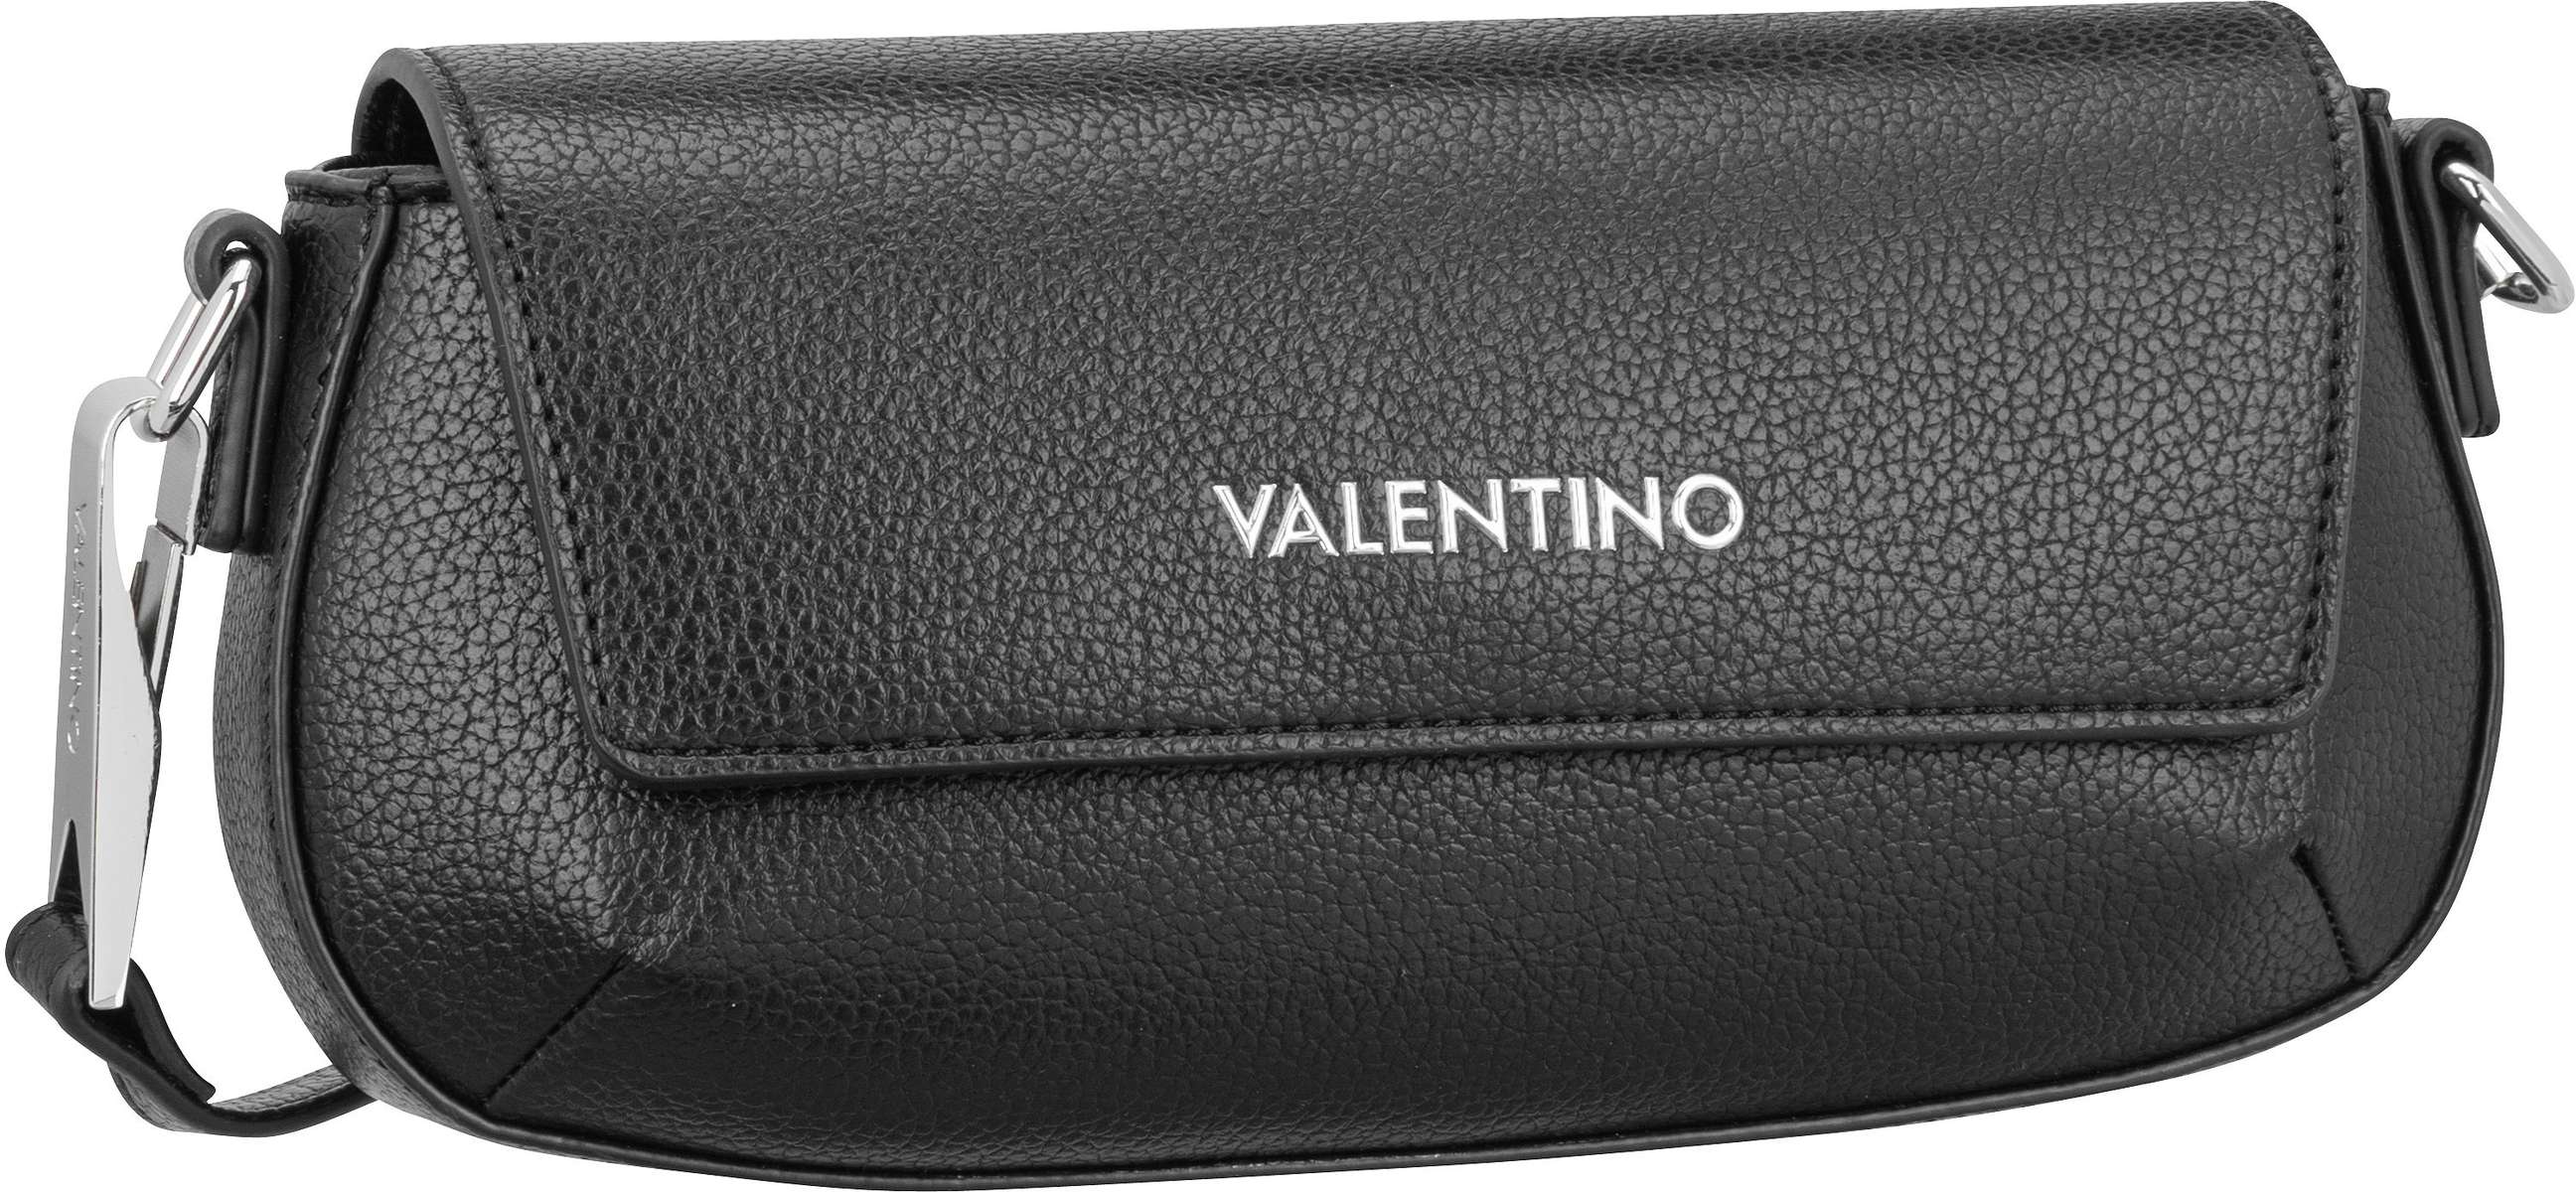 Valentino Conscious RE Flap Bag D01  in Nero (2.3 Liter), Umhängetasche